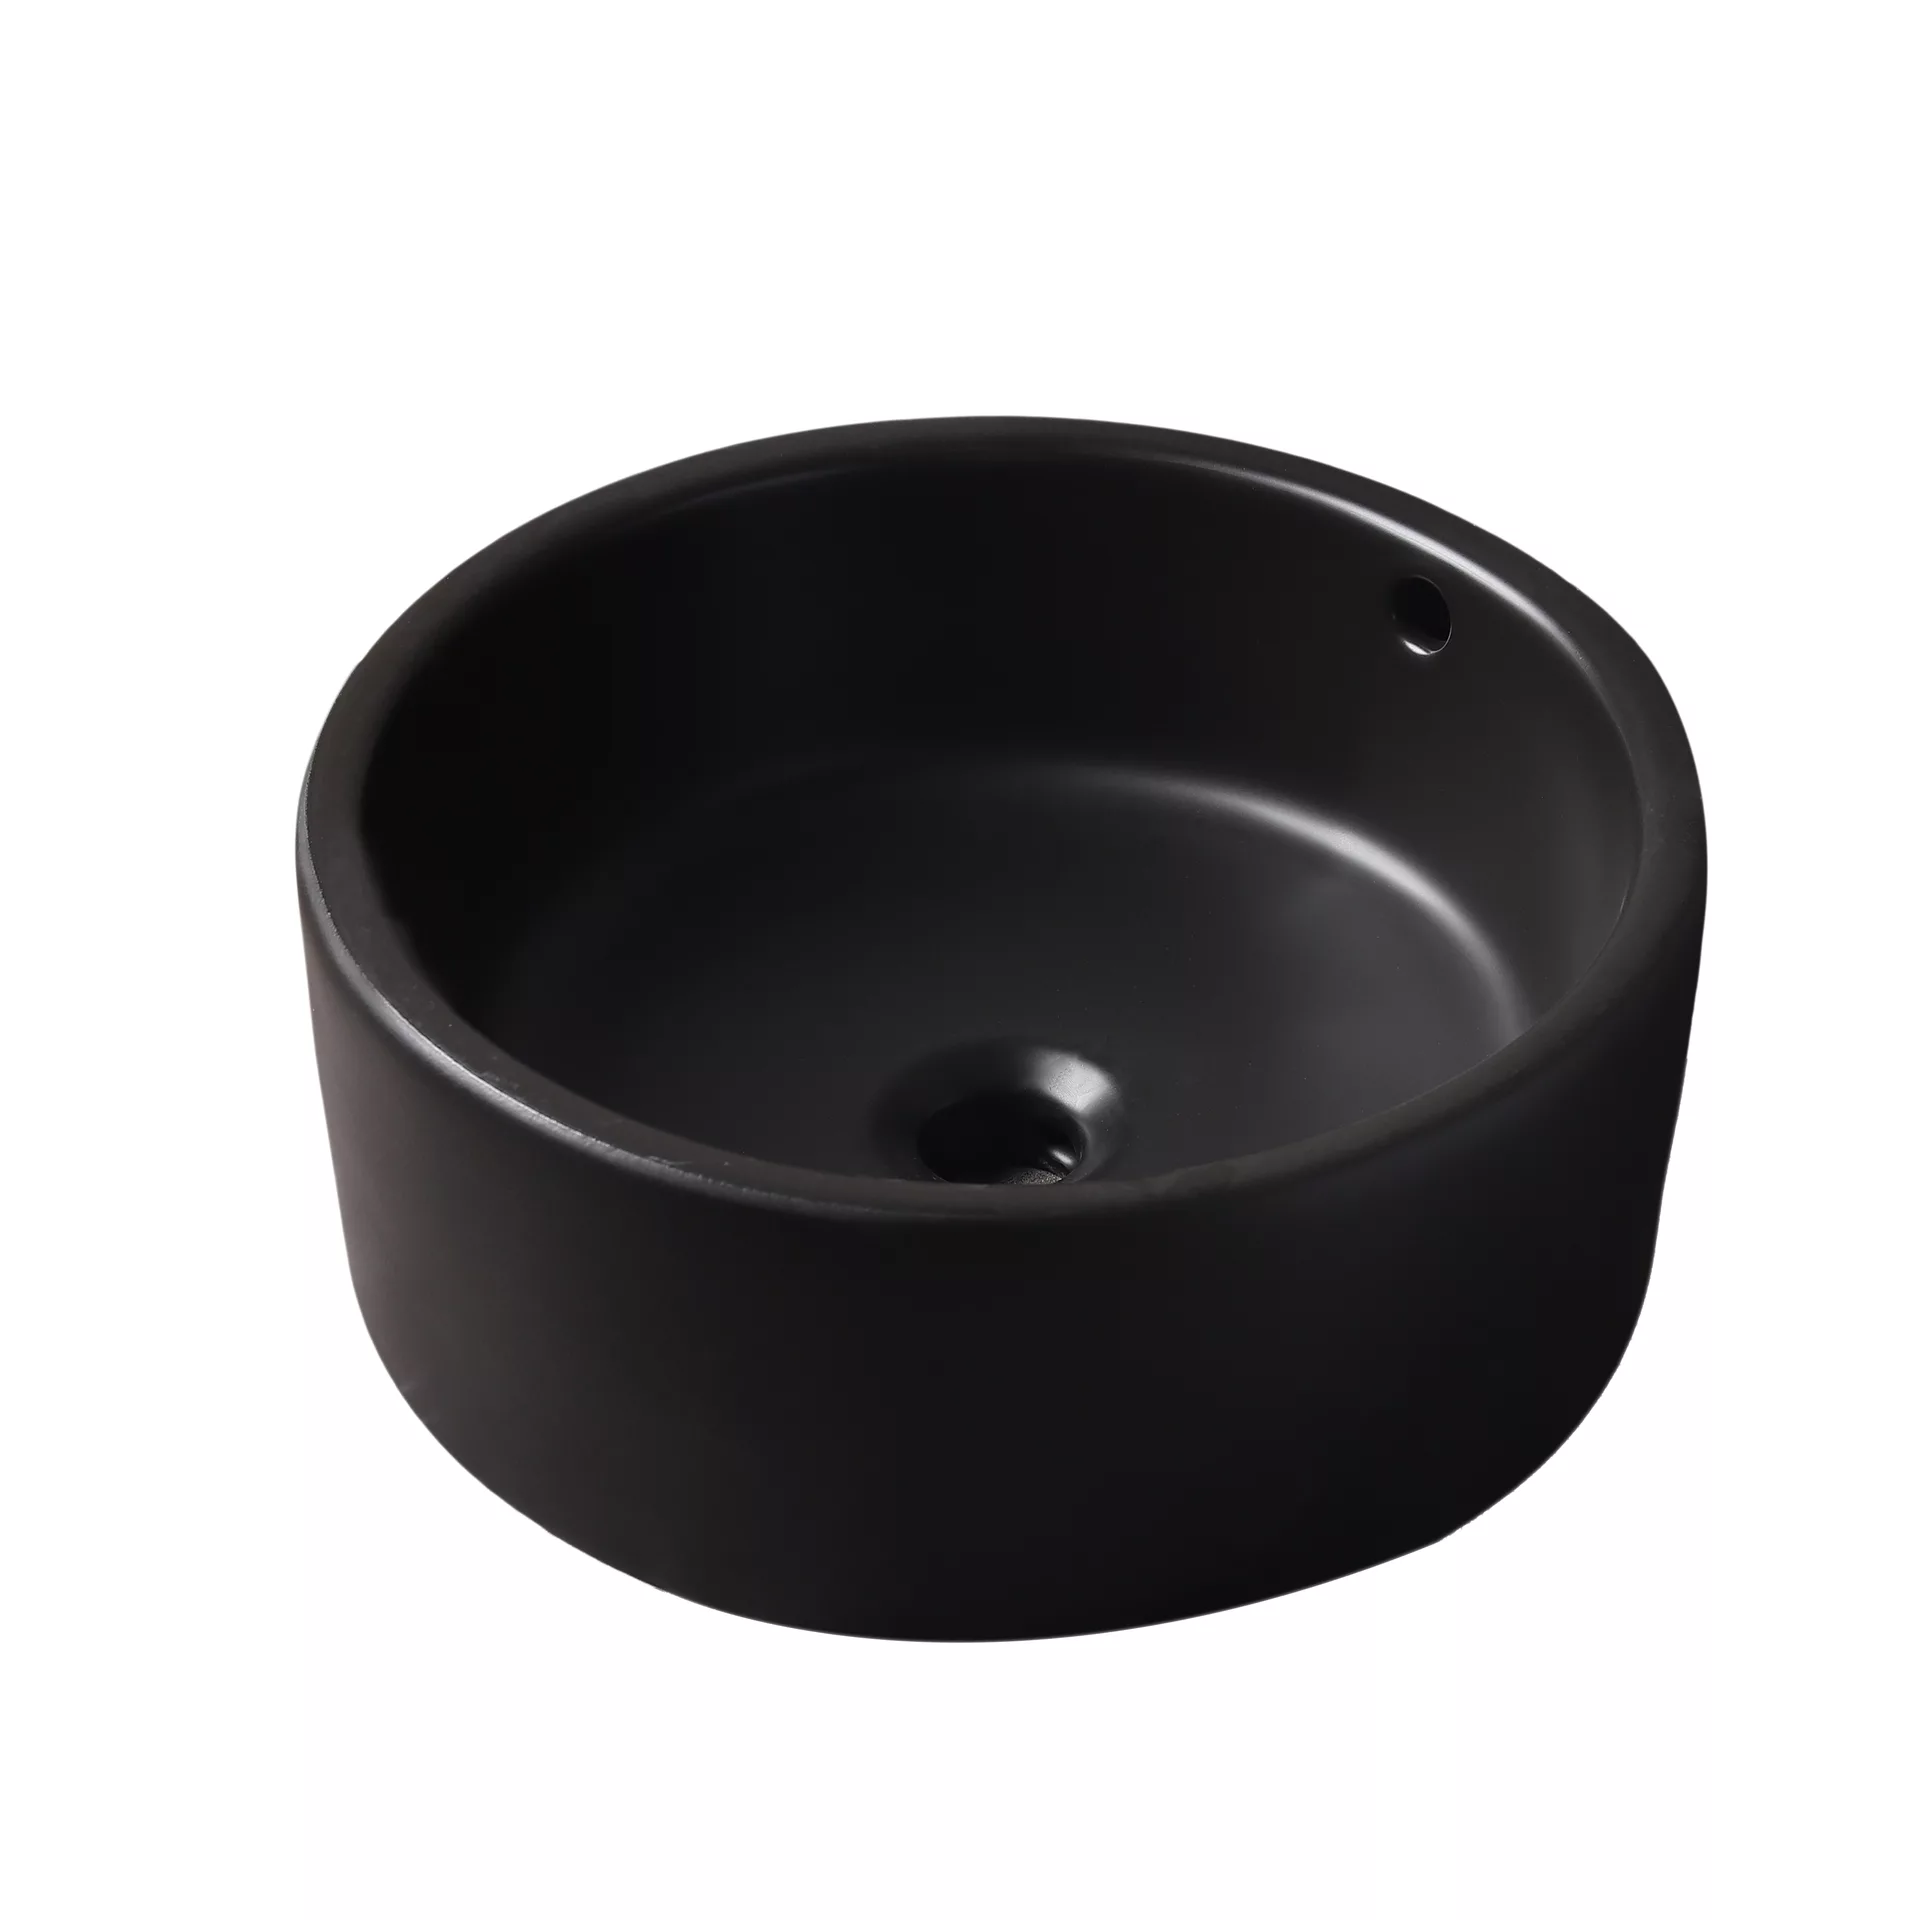 Накладная черная раковина для ванной GiD N9130bg керамическая корзина для луковичных круглая черная